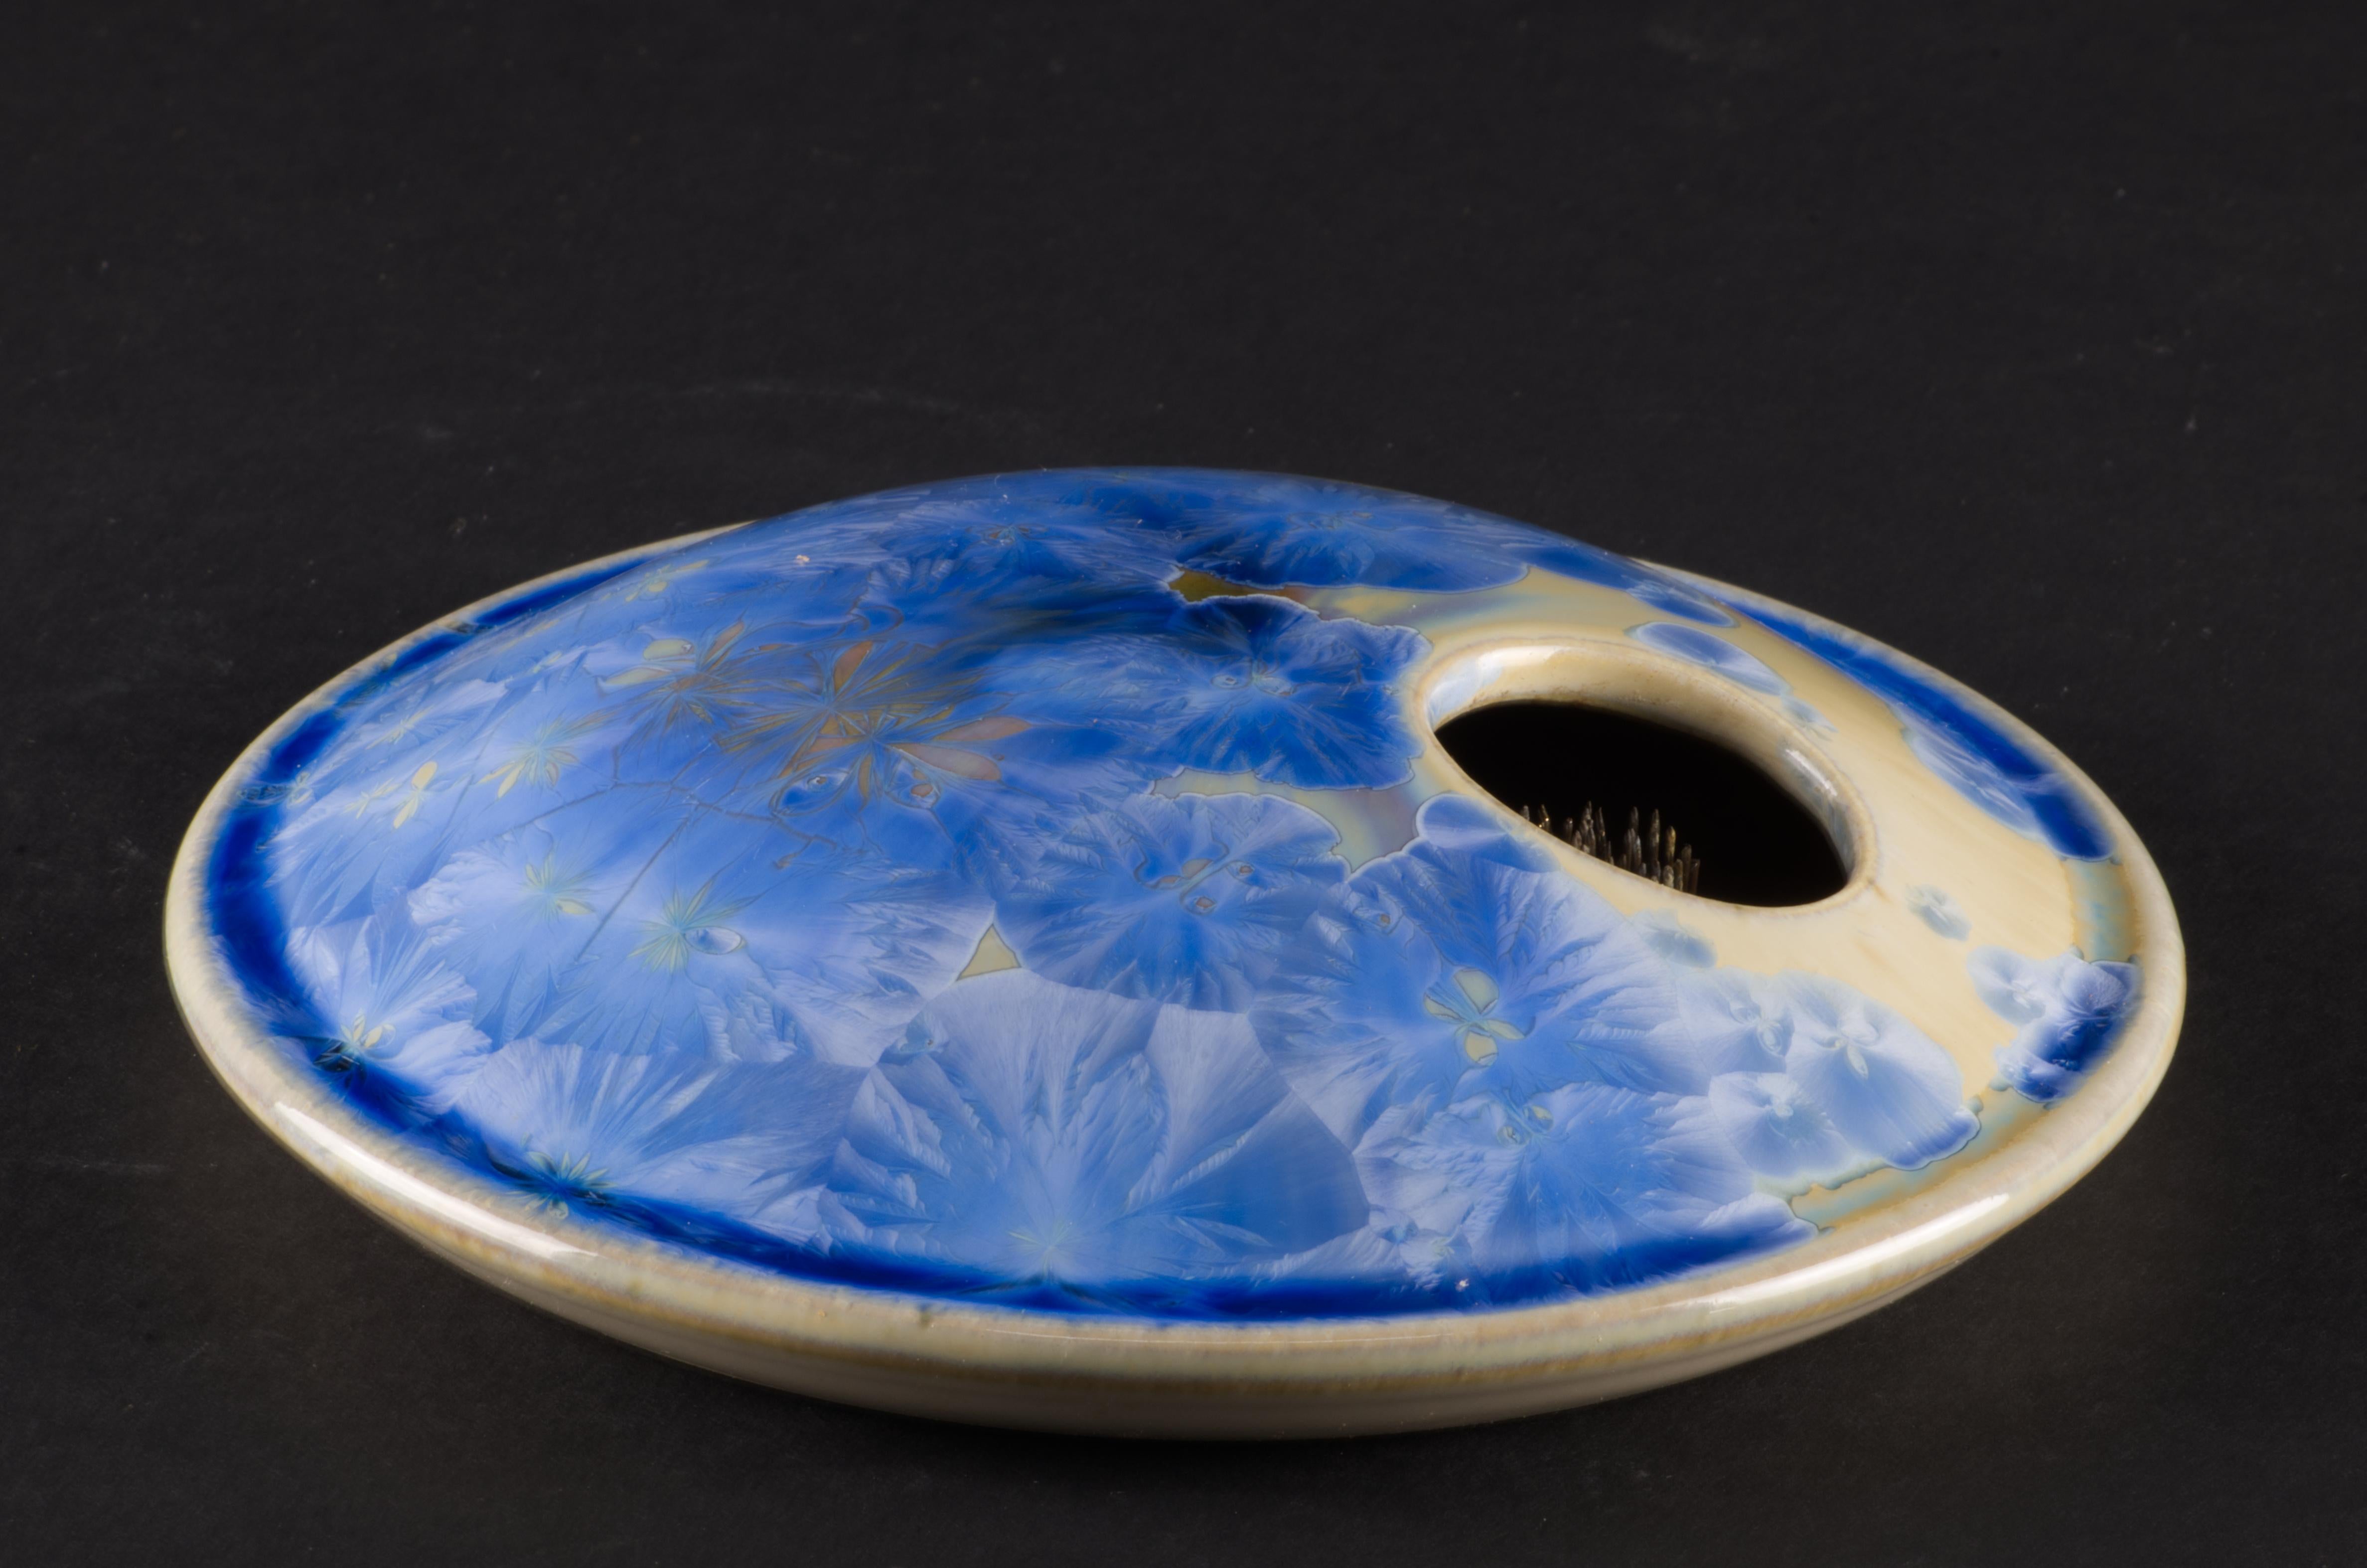  Die keramische Ikebana-Vase des Vintage Studio Pottery ist mit einer kristallinen Glasur in einer auffälligen, leuchtend blauen und gelben Farbpalette verziert. Die Vase wurde von Hand auf einer Drehscheibe gedreht; die blauen Kristalle auf dem